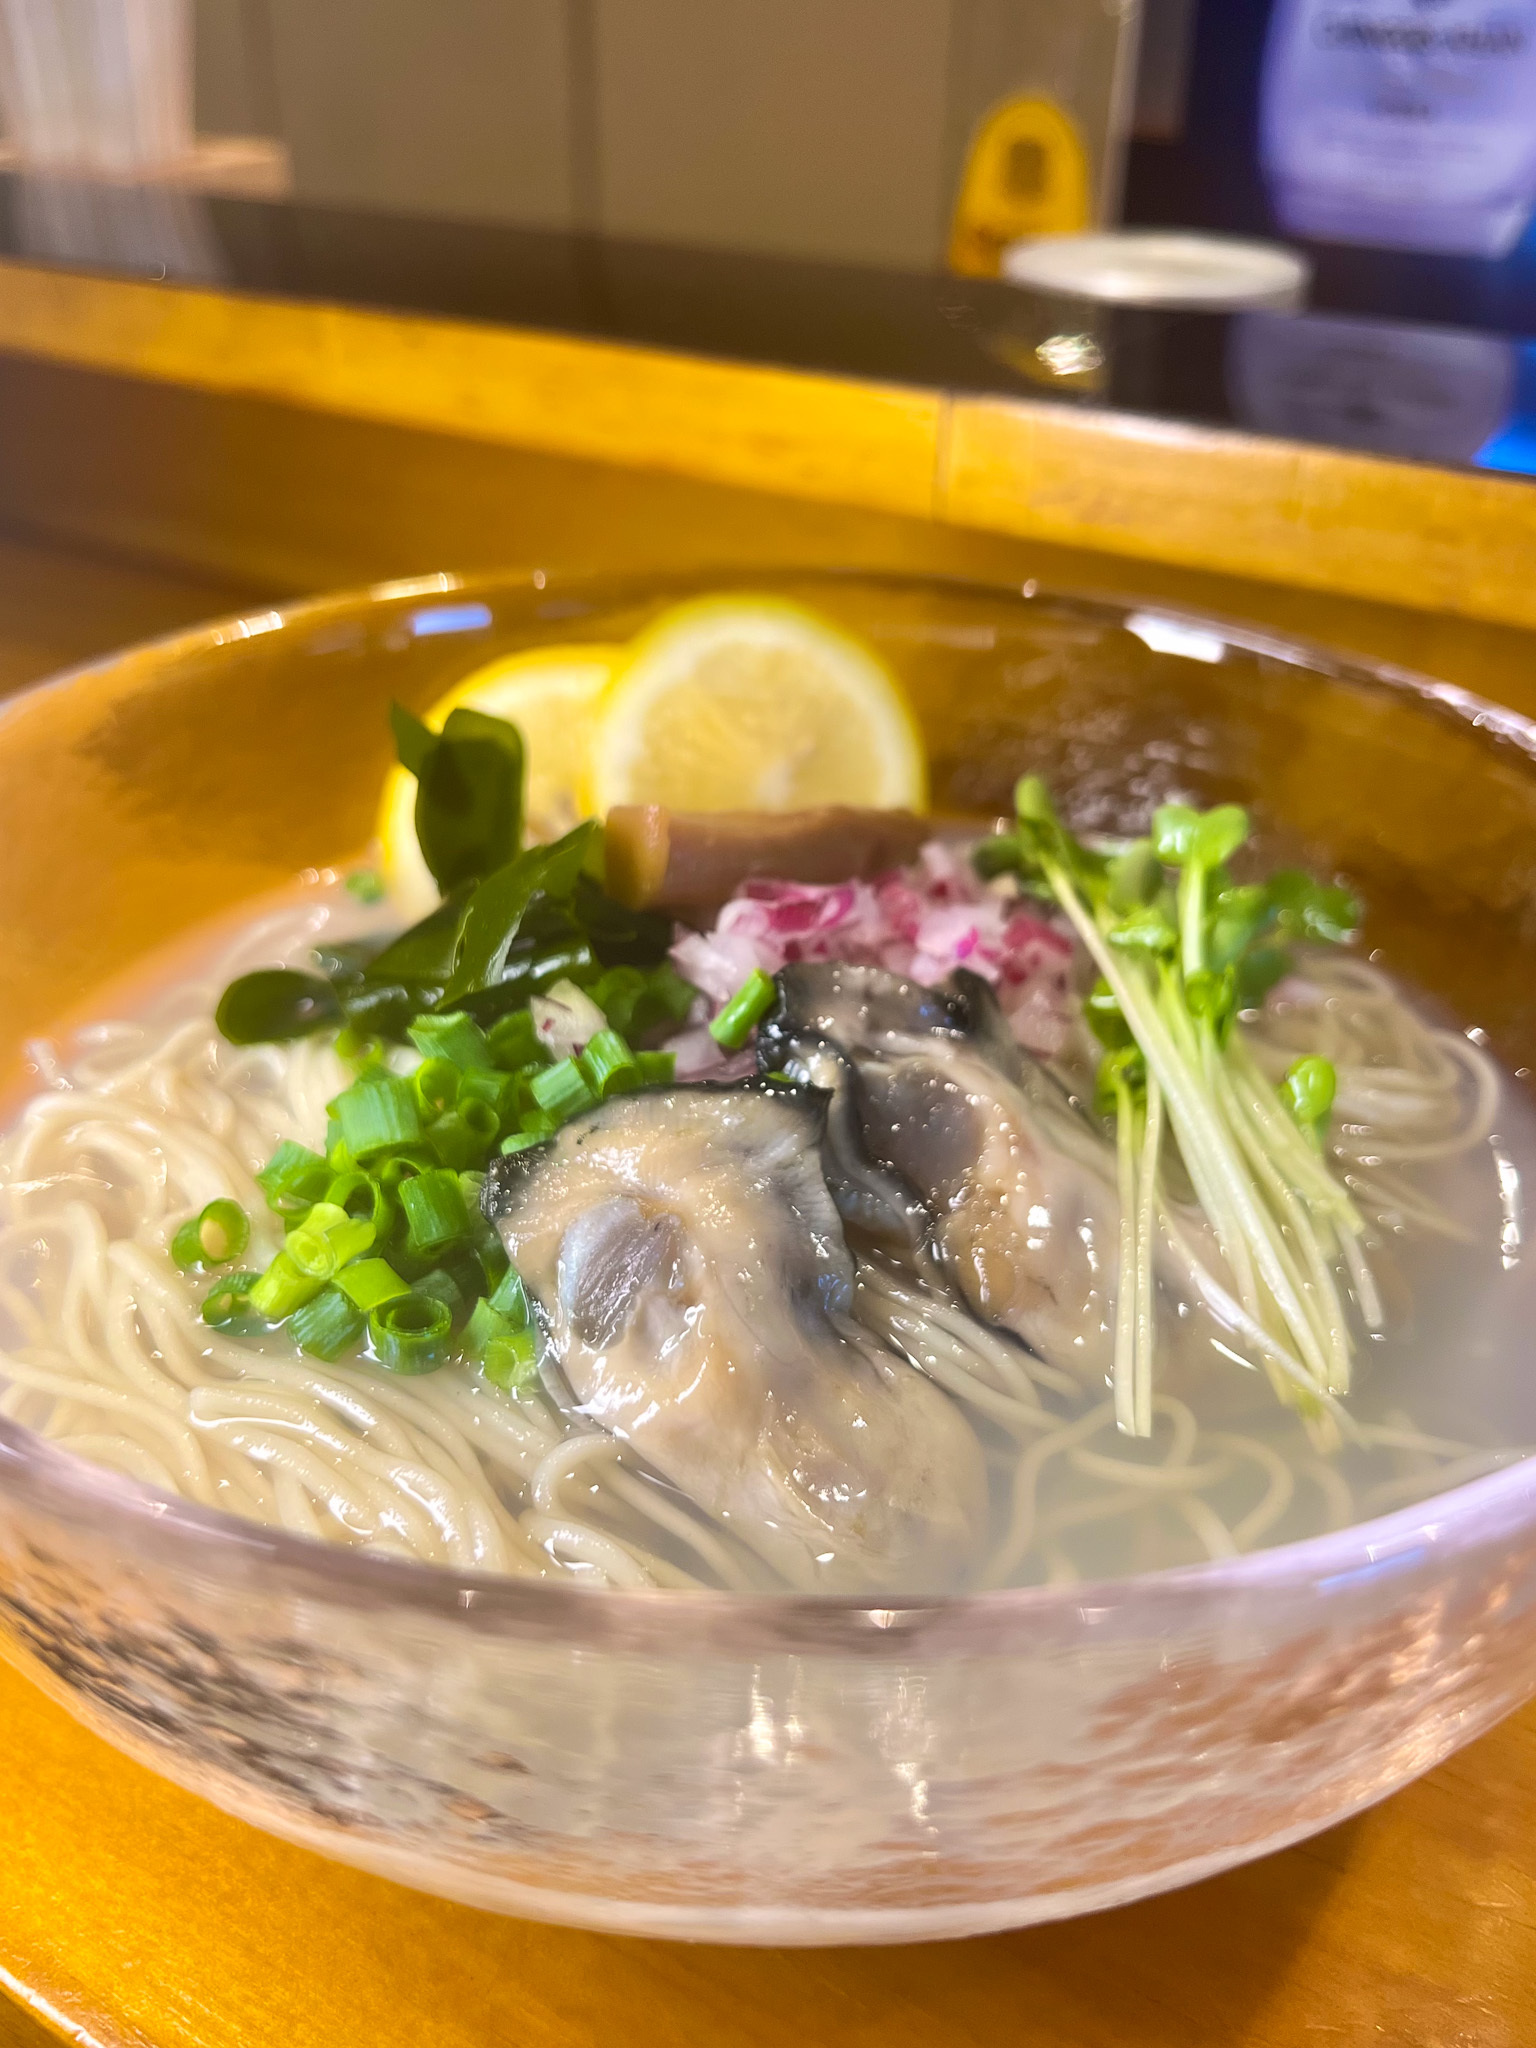 牡蠣の栄養で猛暑を乗り切る！
横浜「Oyster Lab」が夏の冷たい新作
「牡蠣塩冷やしラーメン」を8月限定で提供開始！